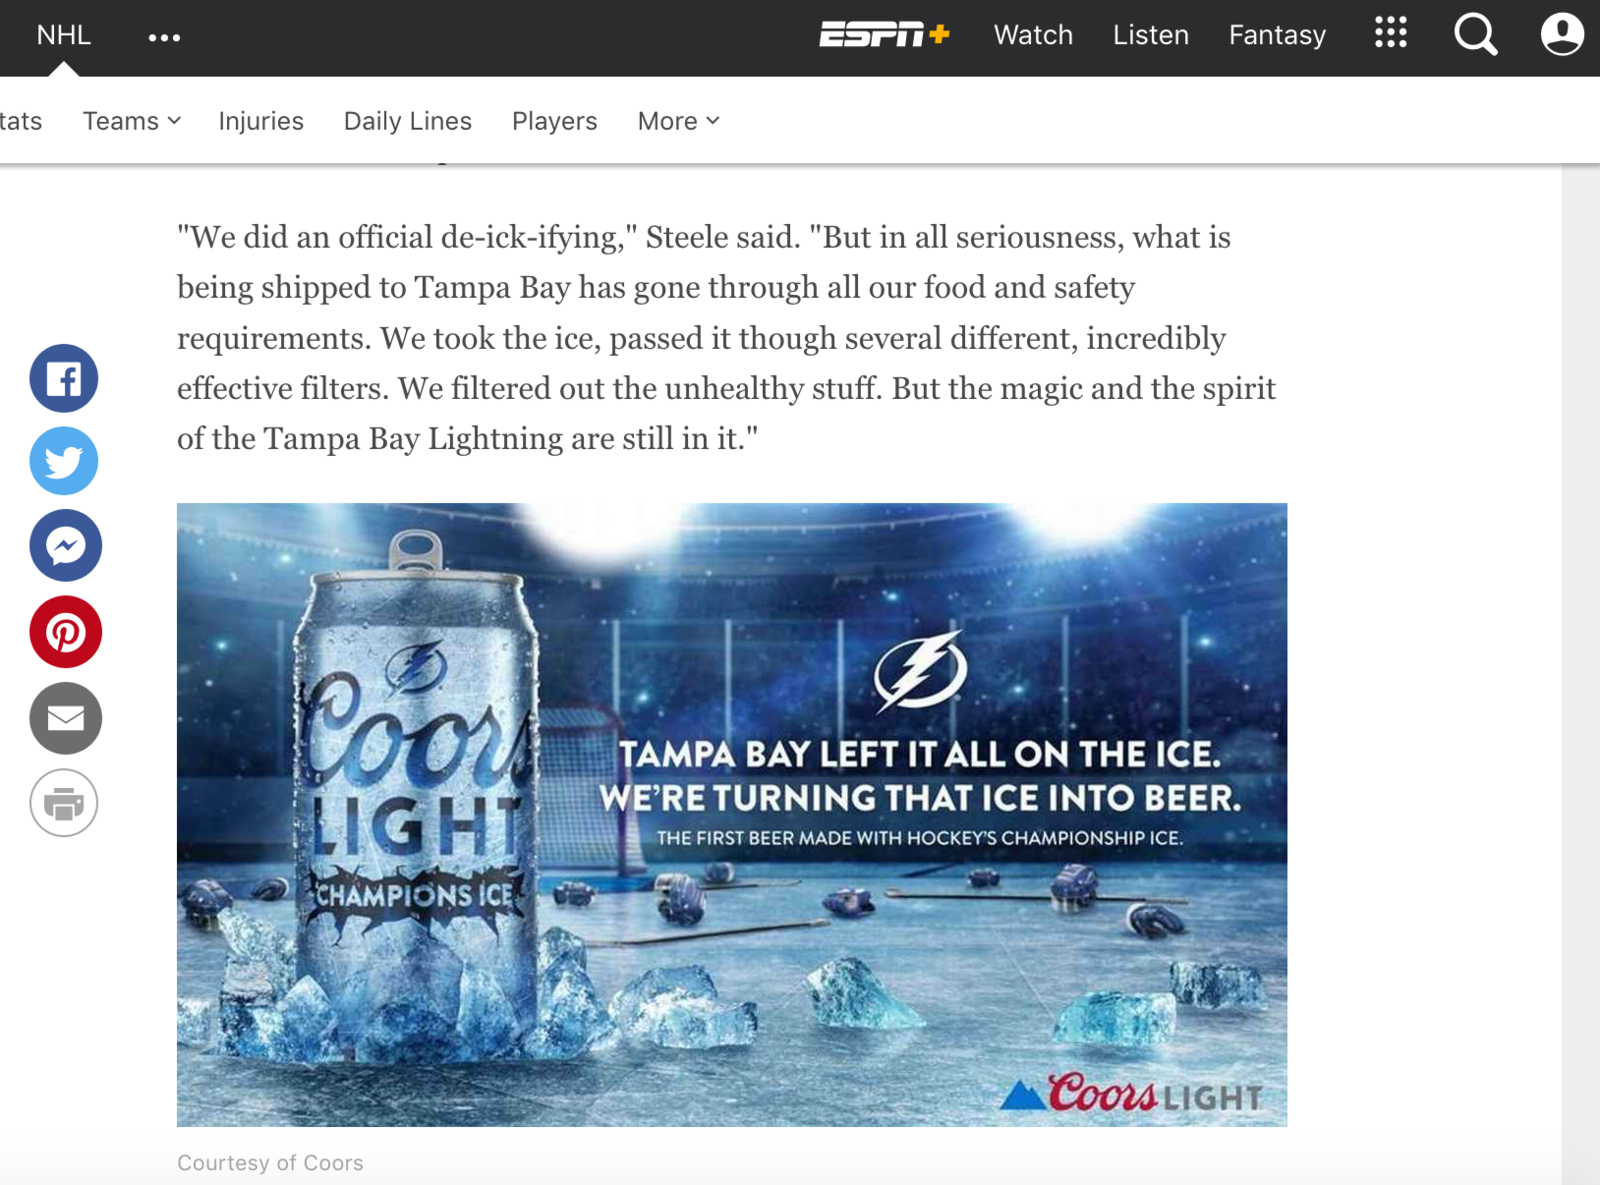 Eisgekühlt: So berichtet das Sportmedium ESPN über das Bier des NHL-Champions.